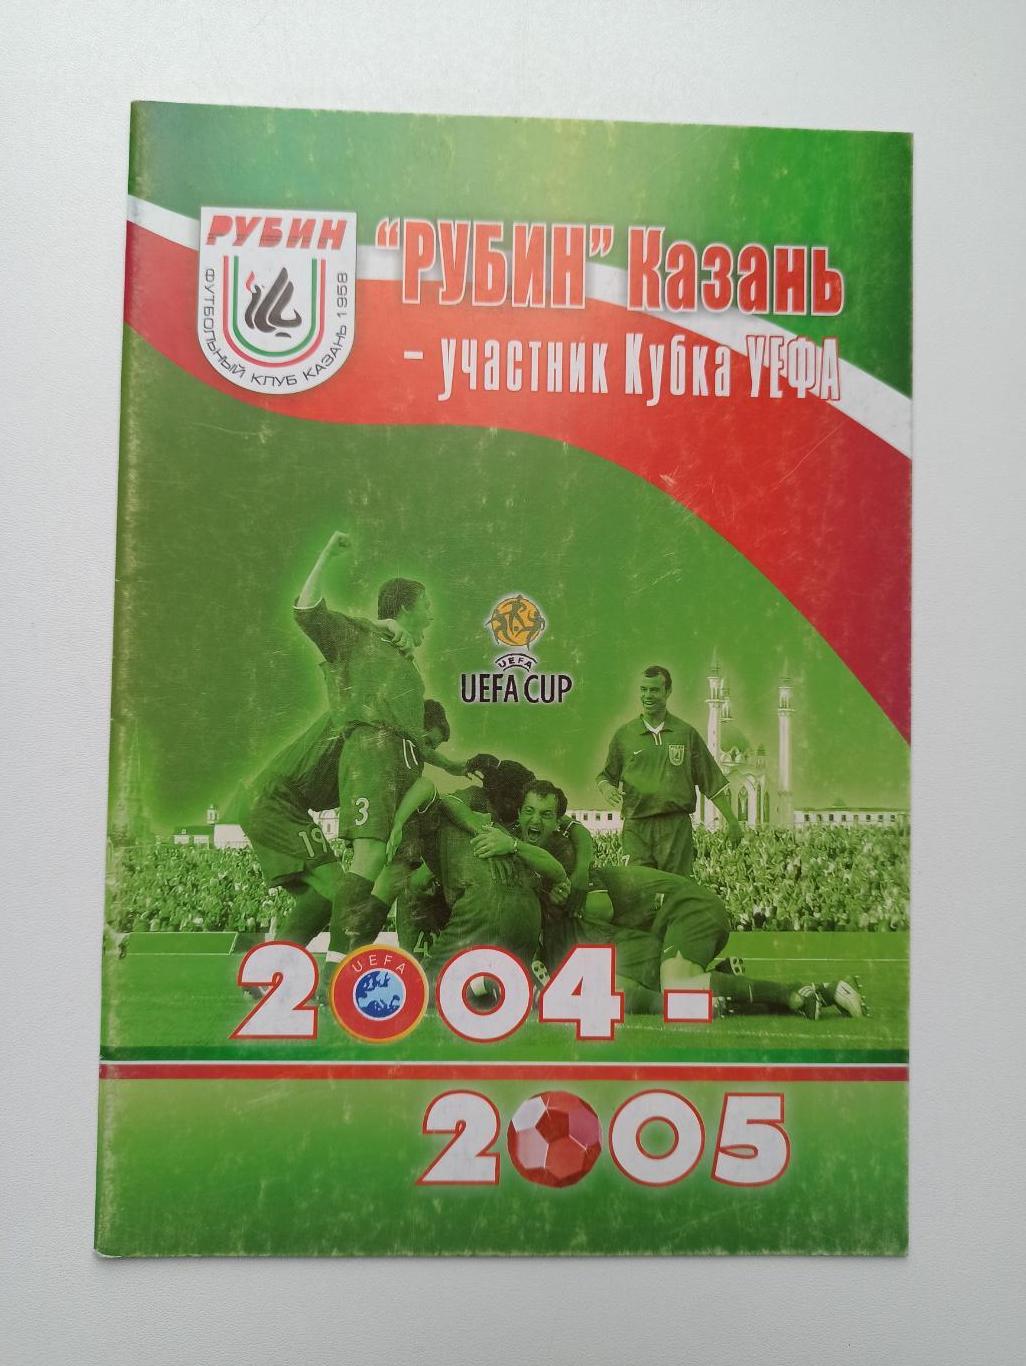 Распродажа, Еврокубки, Рубин Казань-усастник Кубка УЕФА, 2004-2005